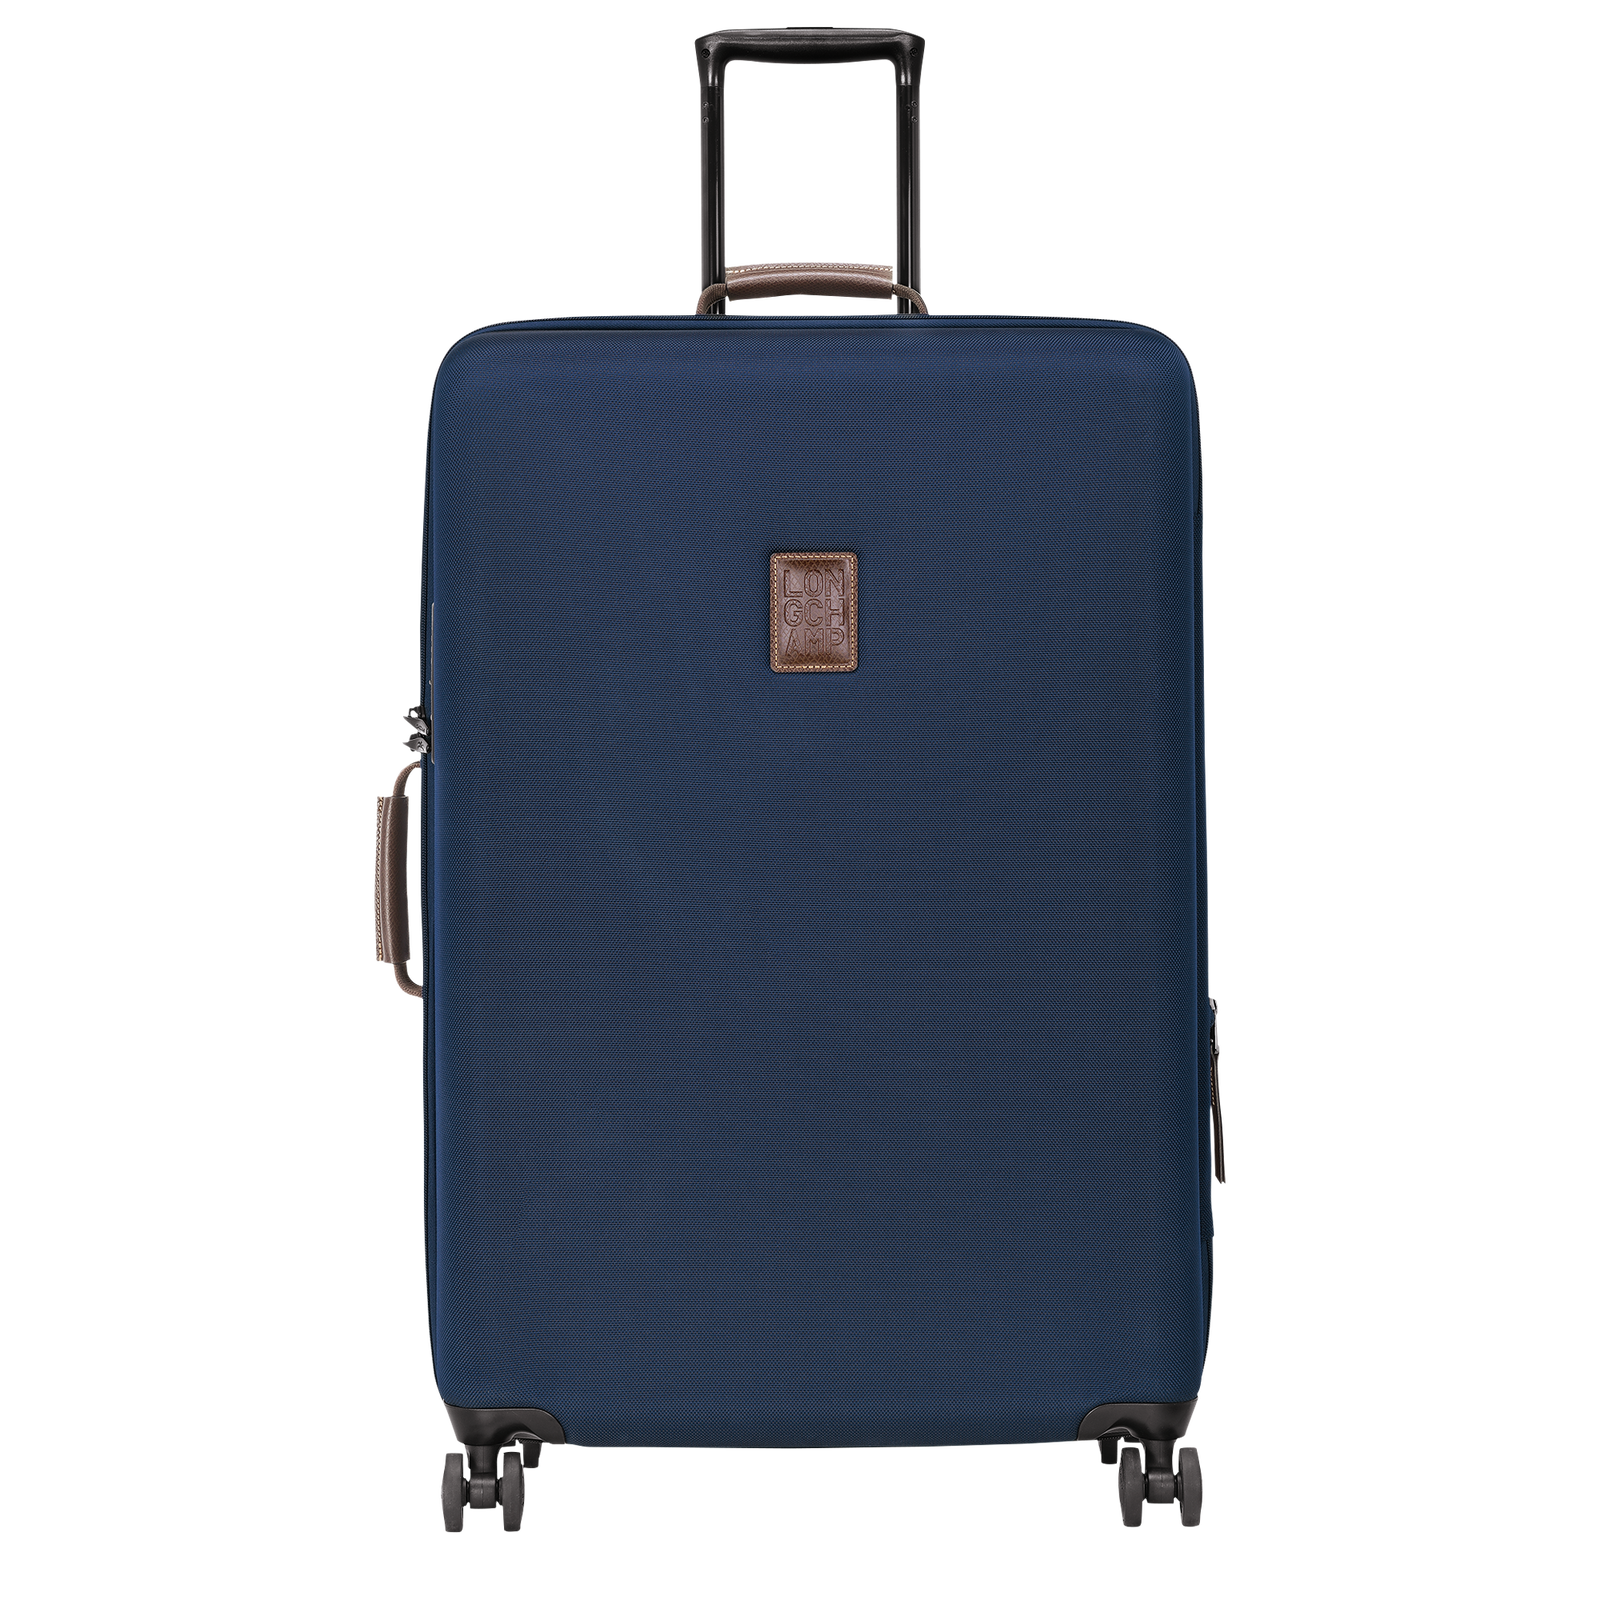 ボックスフォード スーツケース XL, ブルー